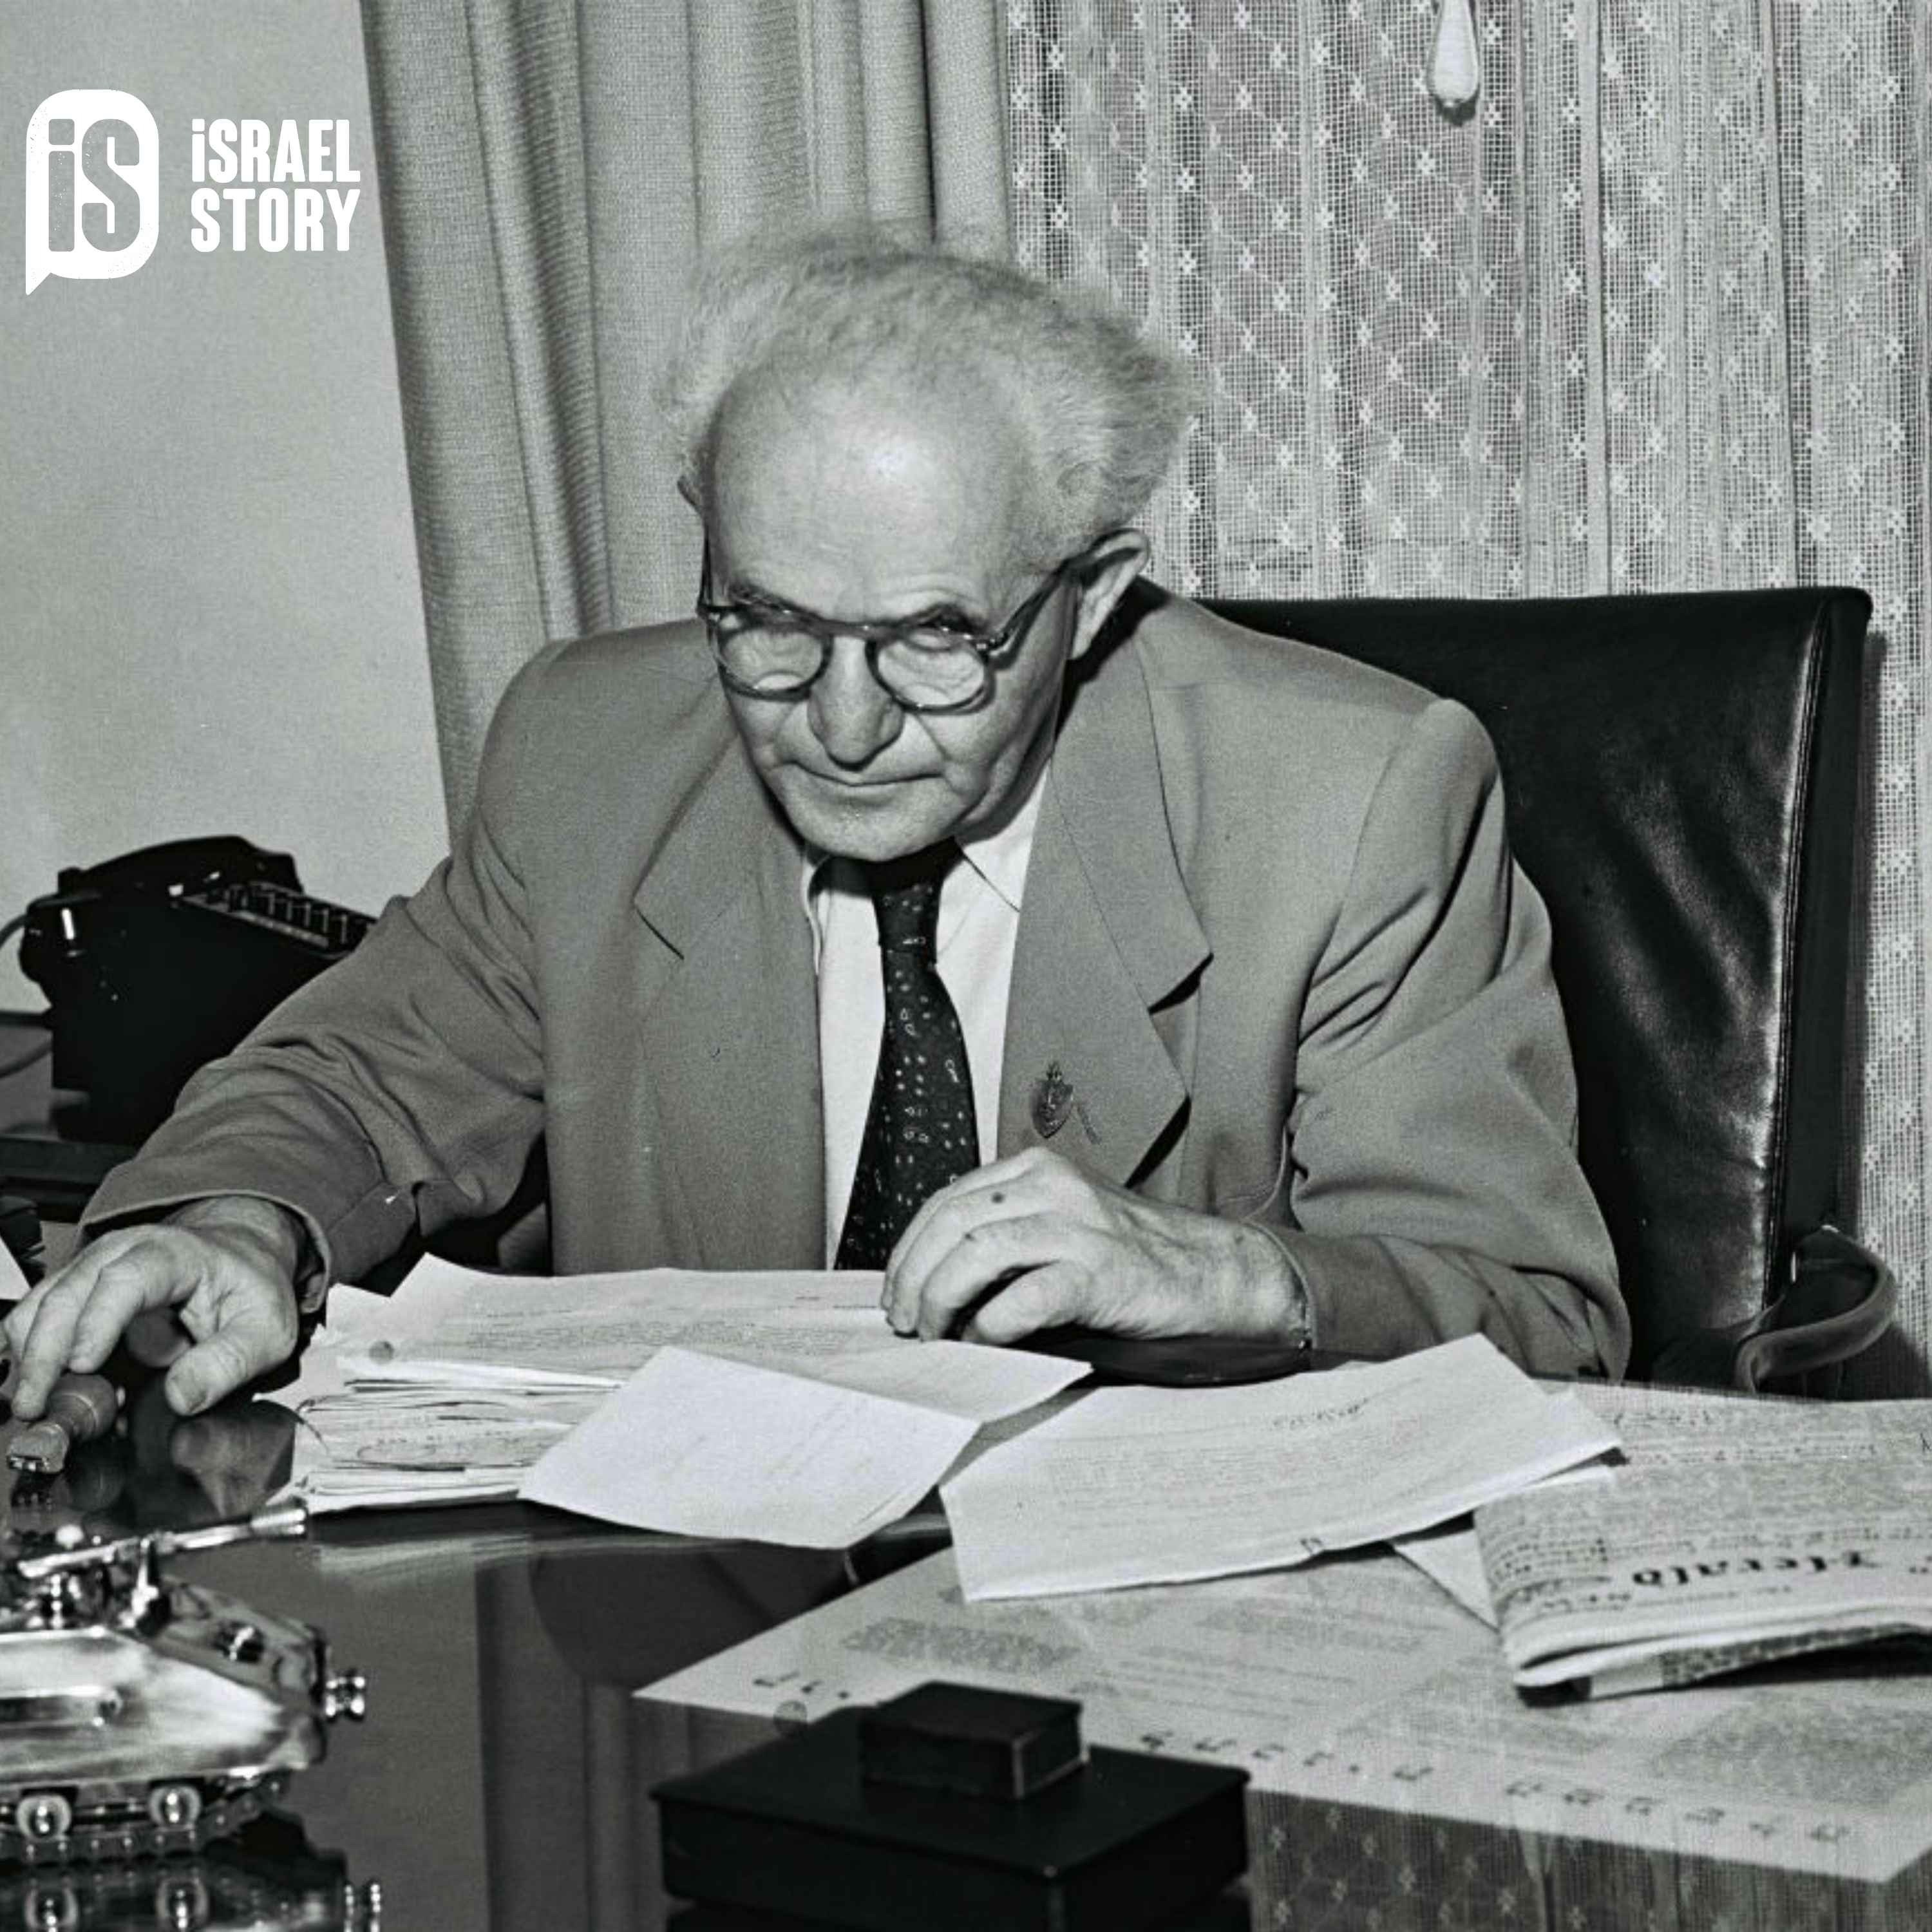 81: Signed, Sealed, Delivered? David Ben-Gurion